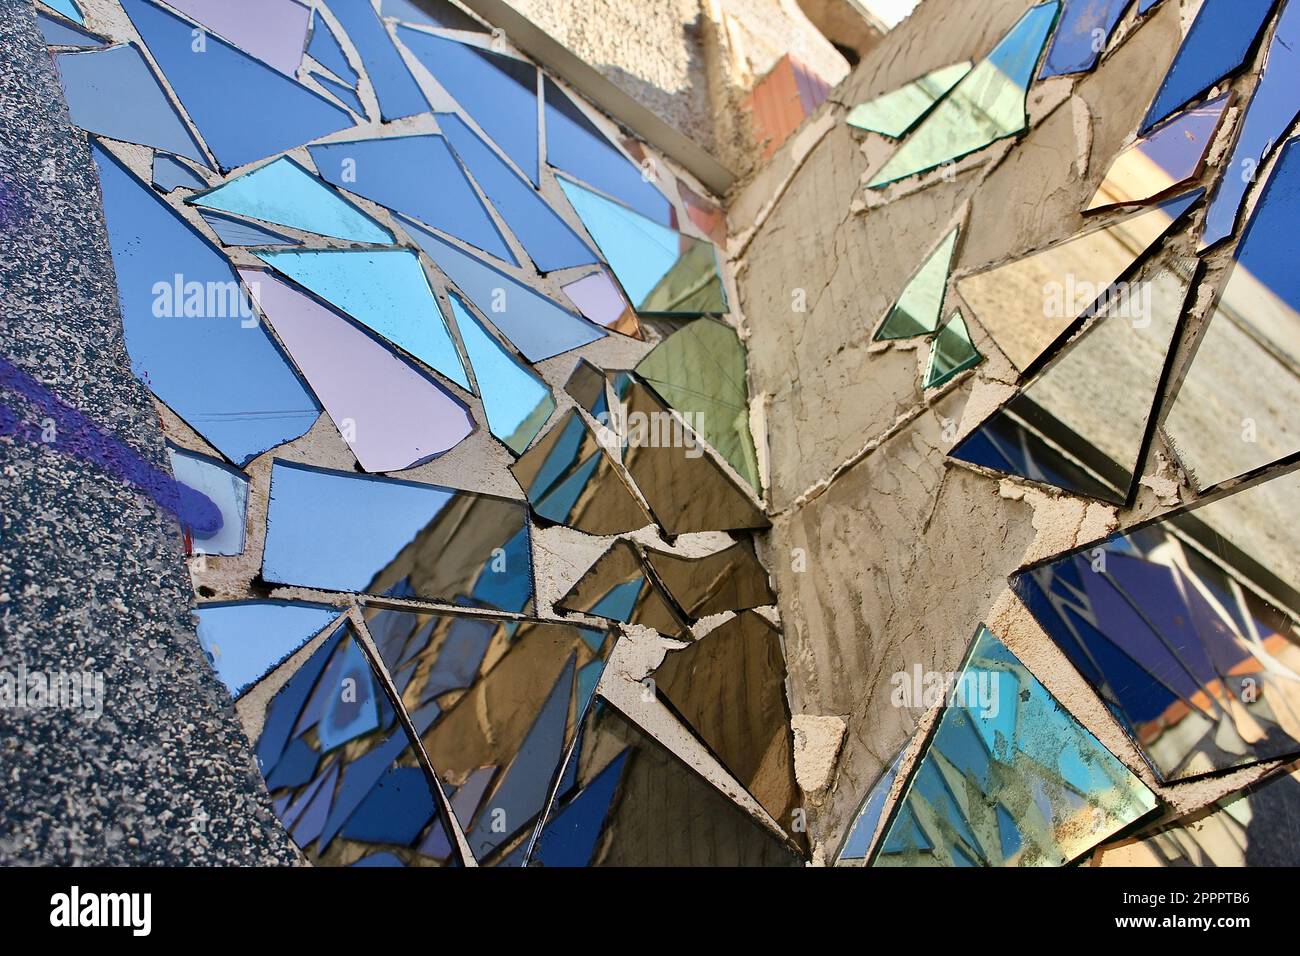 Décoration murale composée de miroirs bleus reflétant le ciel. Banque D'Images